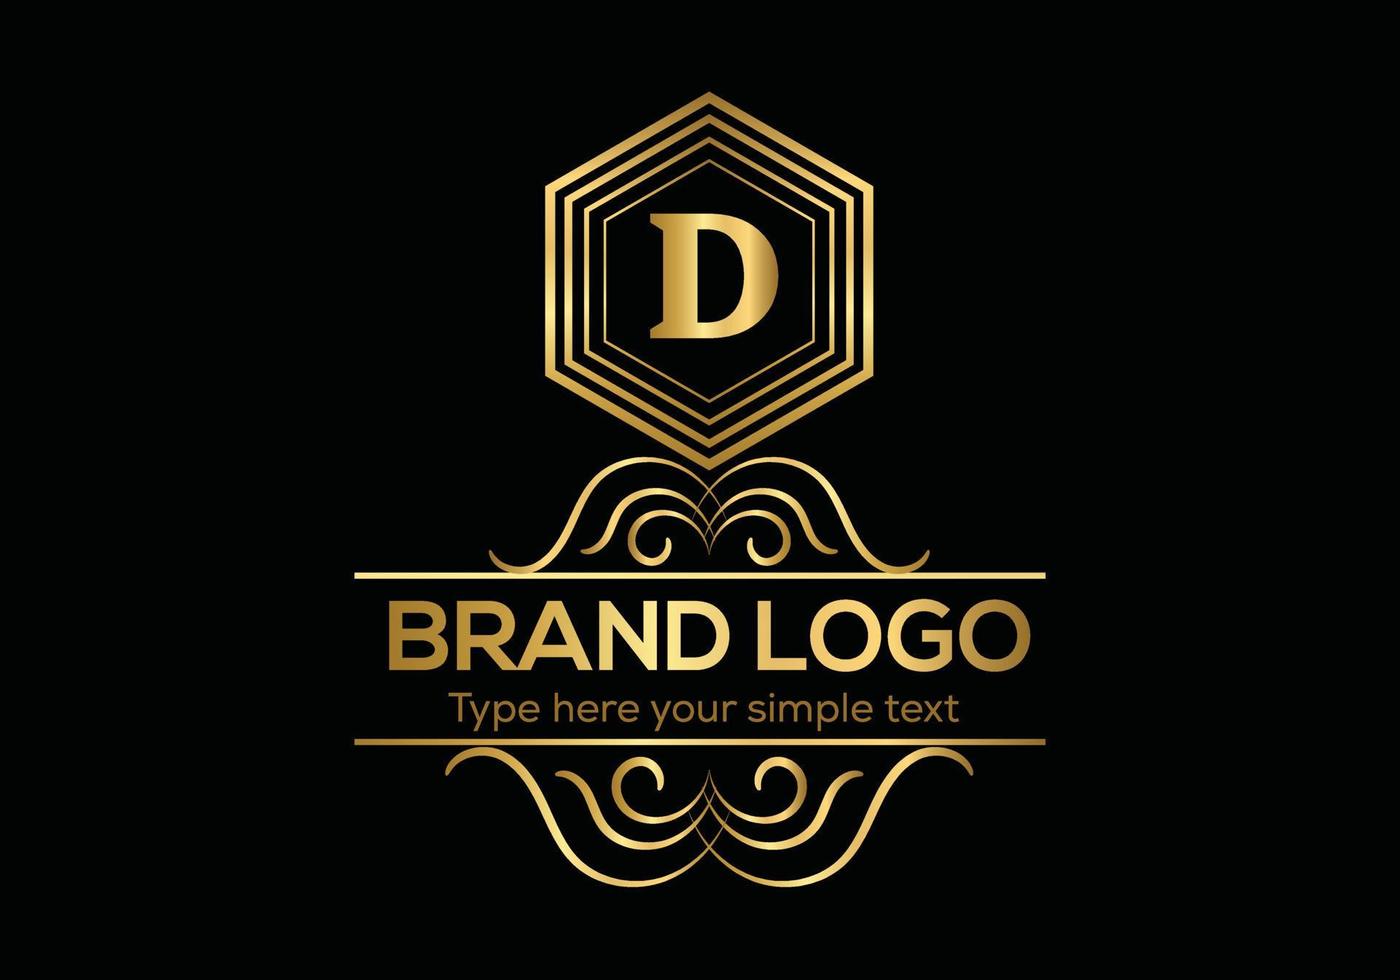 initiale lettre luxe logo modèle dans vecteur art